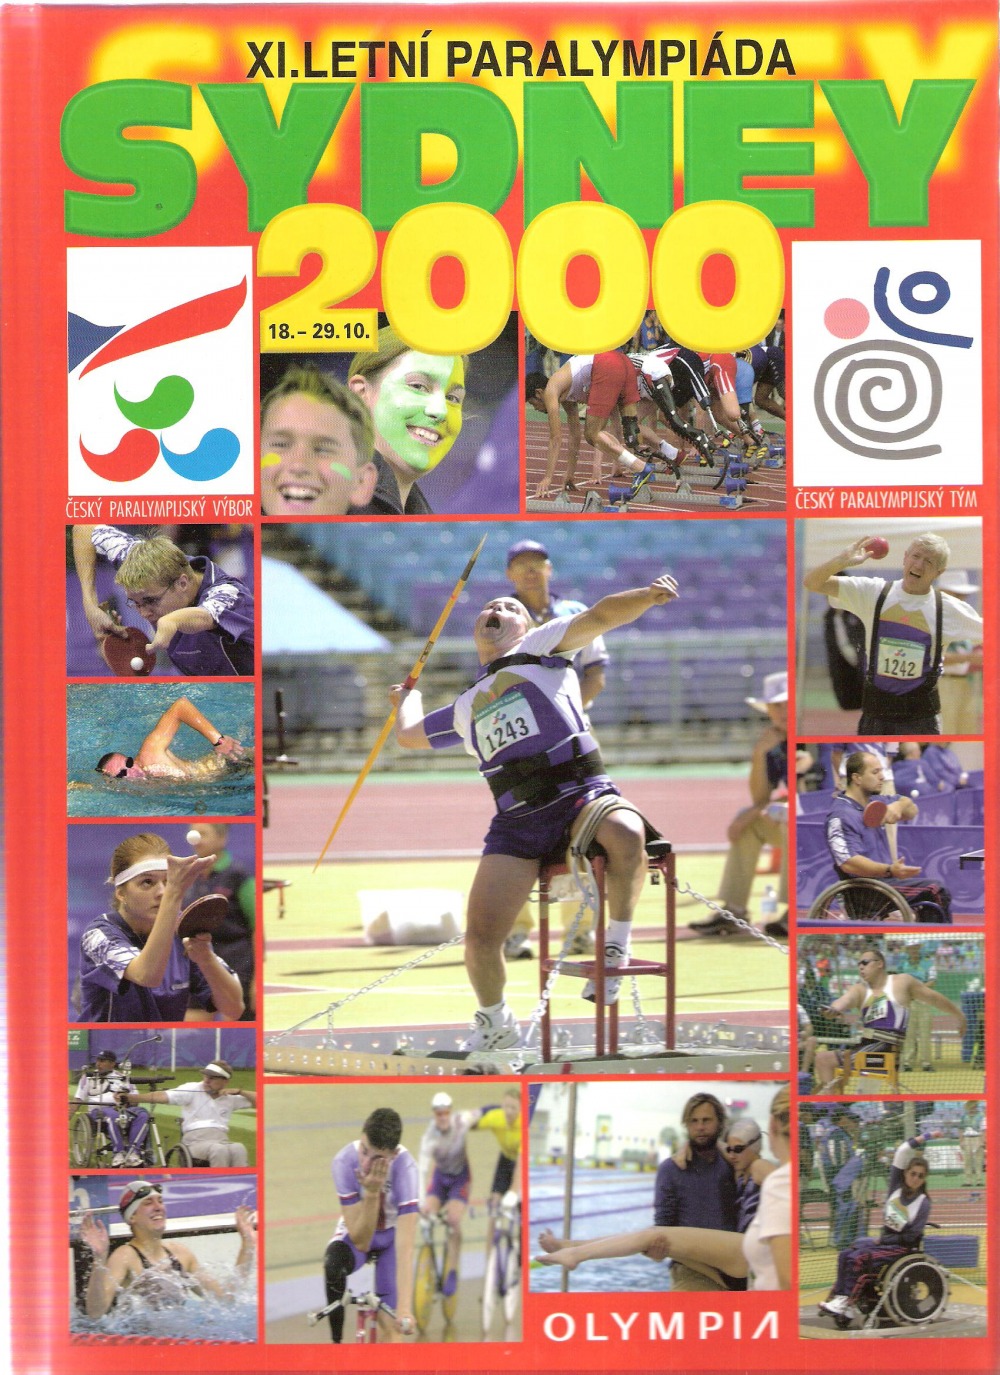 XI. letní paralympiáda Sydney 2000